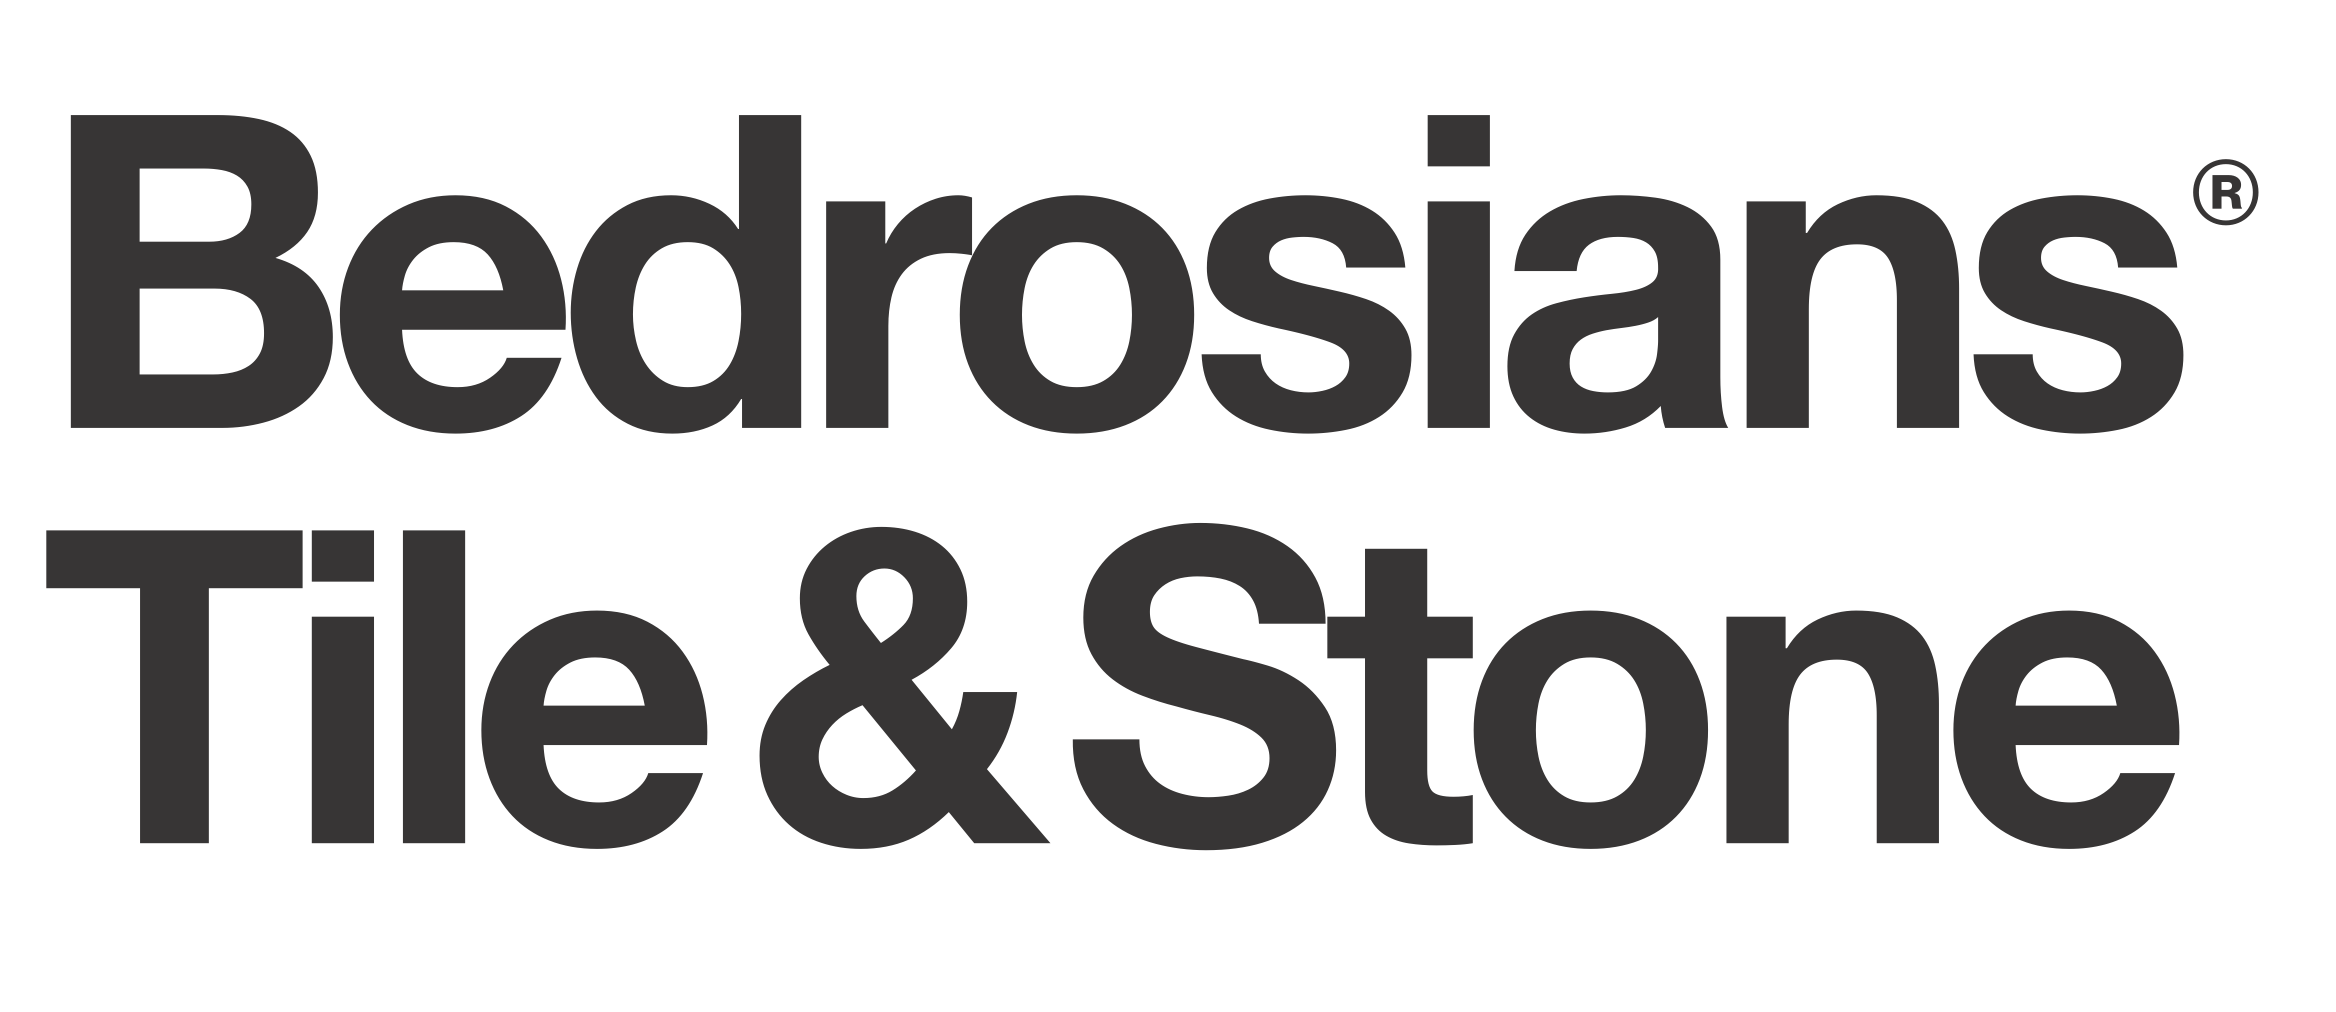 Bedrosians Tile & Stone_logo